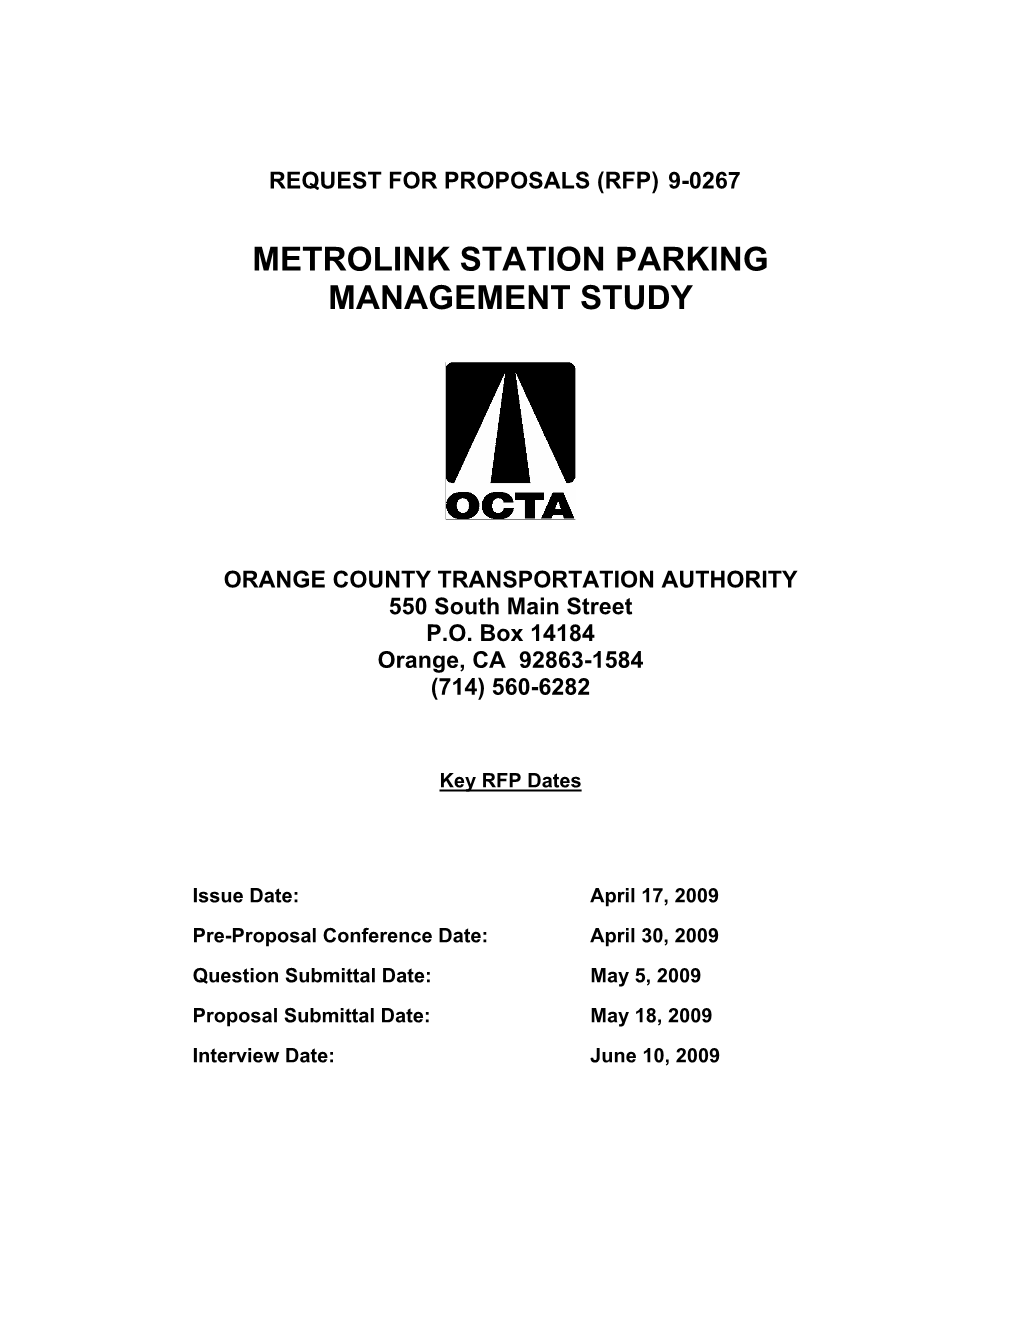 Metrolink Station Parking Management Study